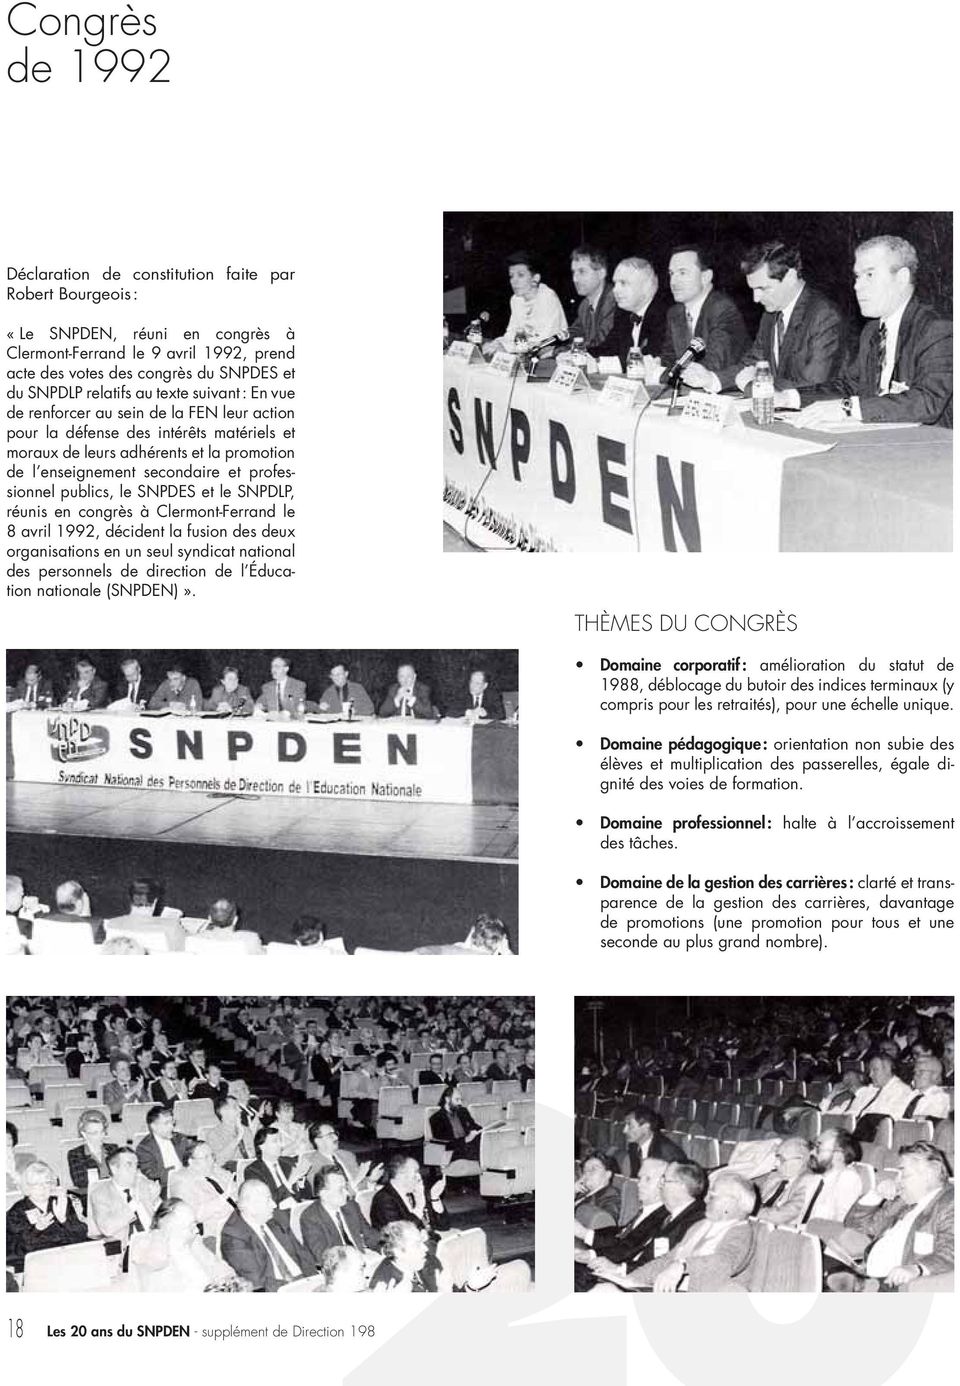 professionnel publics, le SNPDES et le SNPDLP, réunis en congrès à Clermont-Ferrand le 8 avril 1992, décident la fusion des deux organisations en un seul syndicat national des personnels de direction